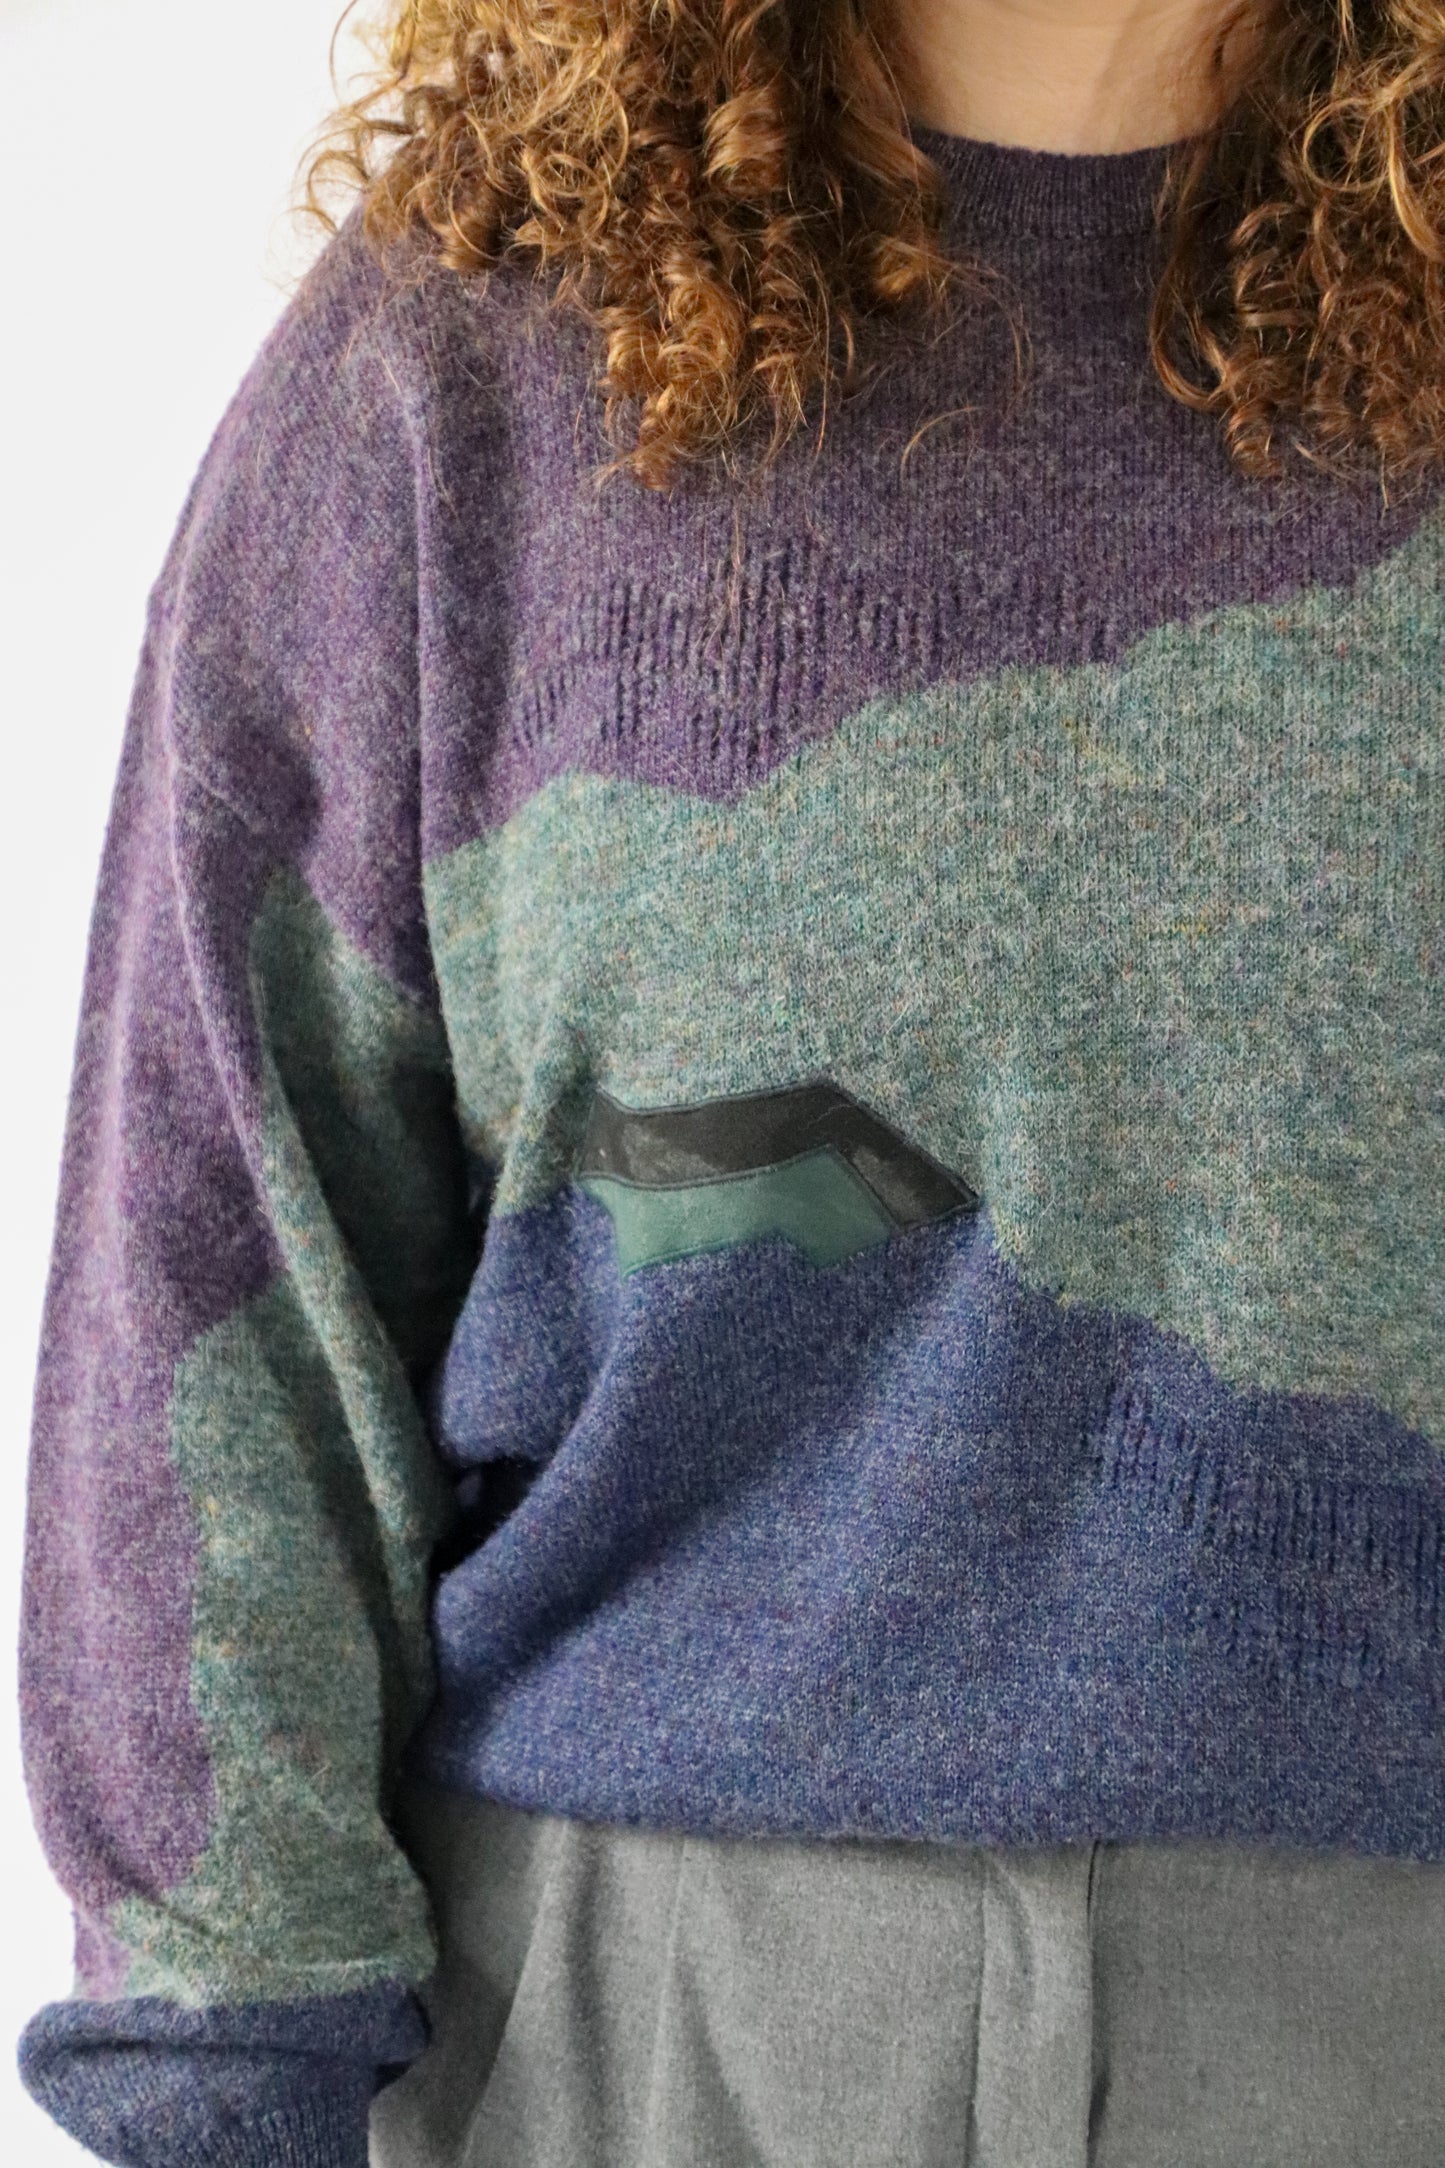 xap knitted sweater - XL/XXL